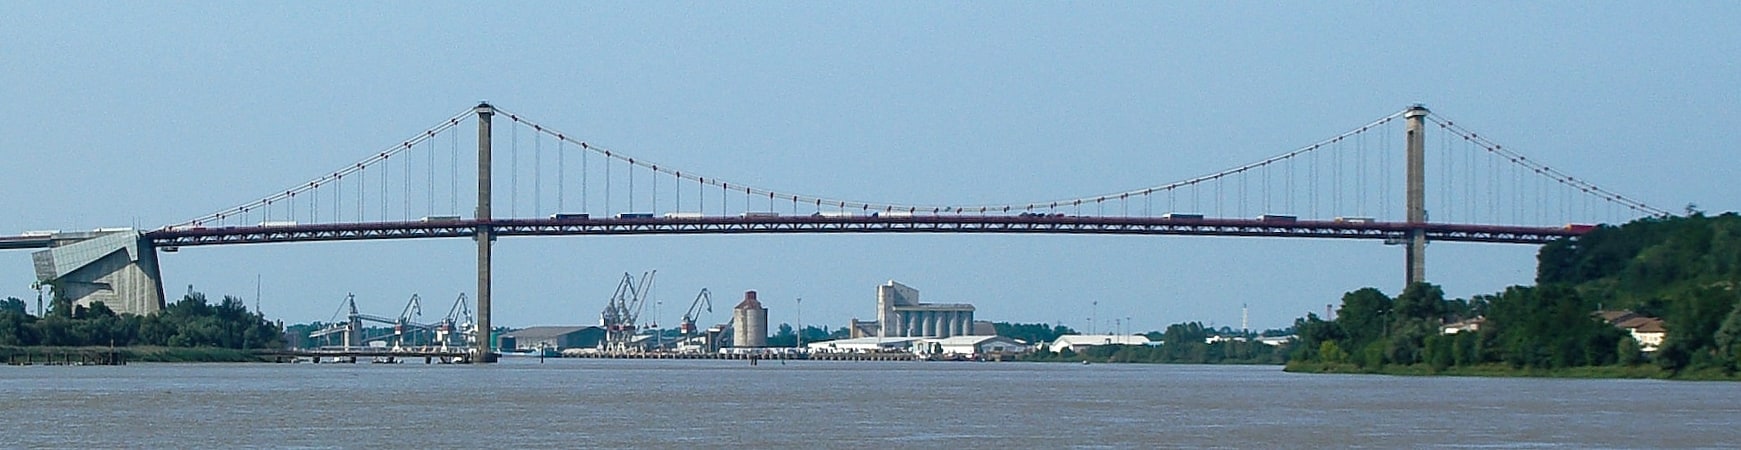 Suspension bridge in Bordeaux, France